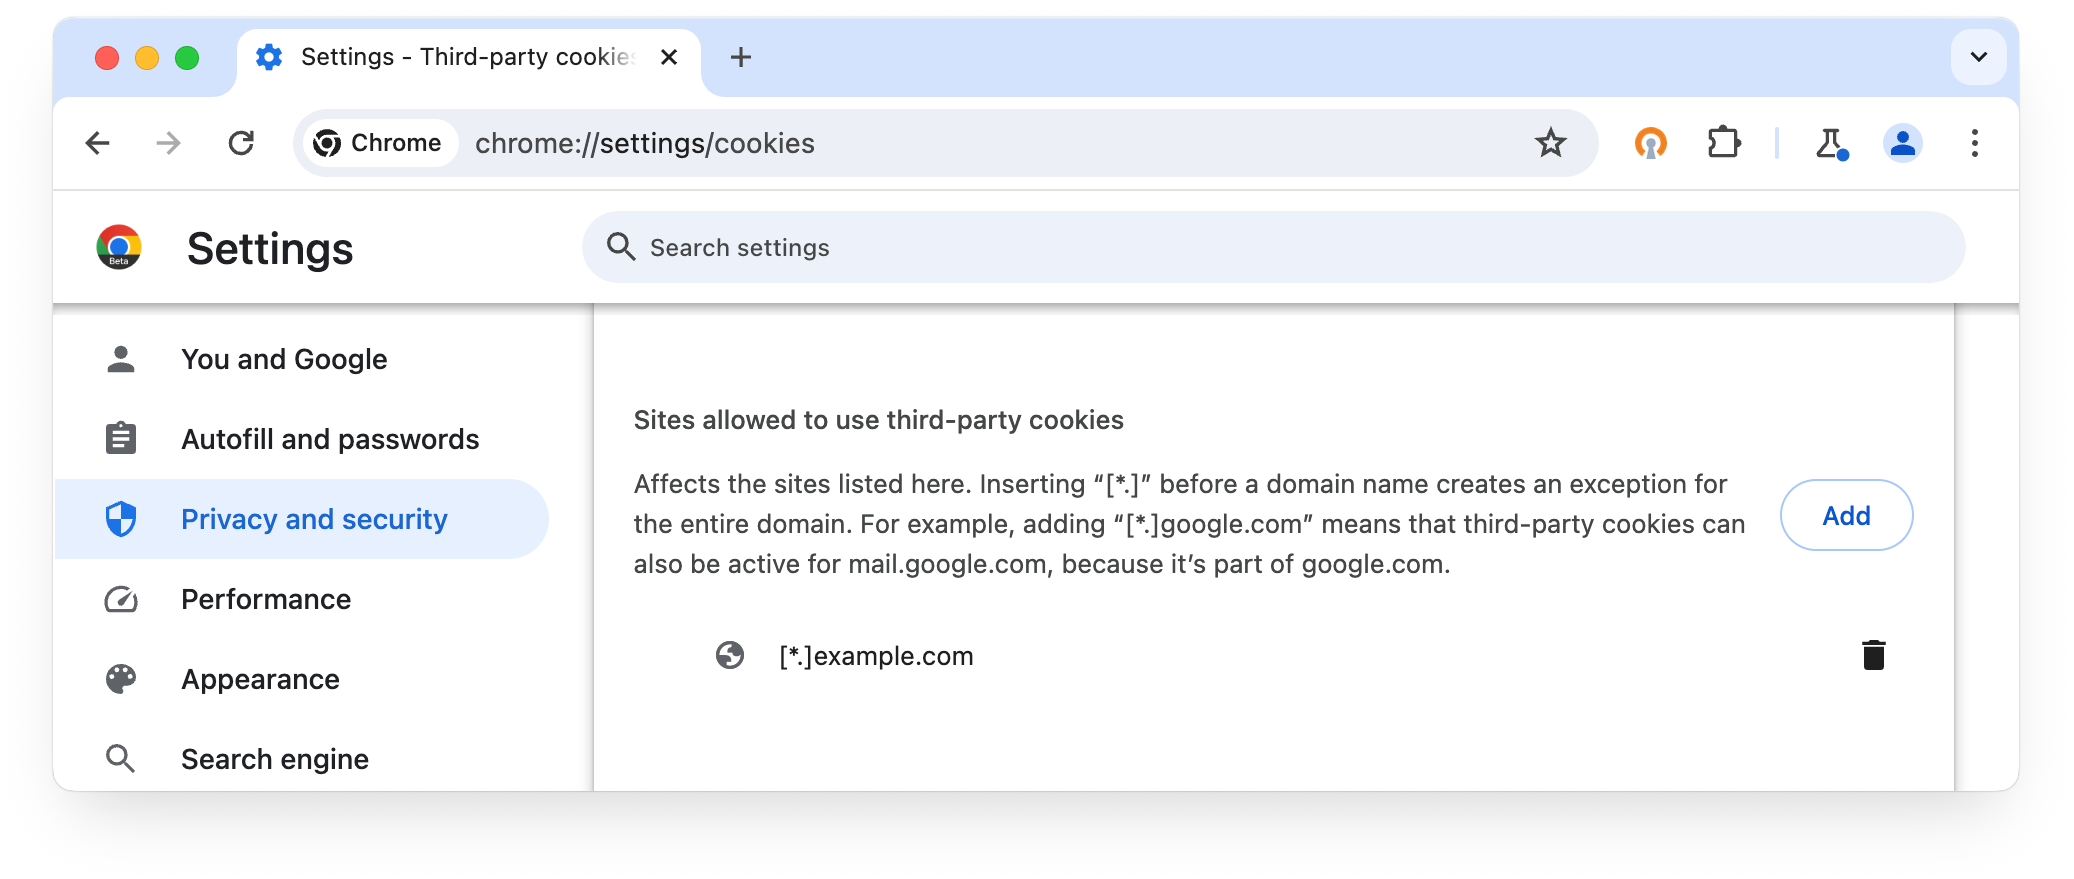 chrome://settings/cookies: Üçüncü taraf çerezlerini kullanmasına izin verilen siteler